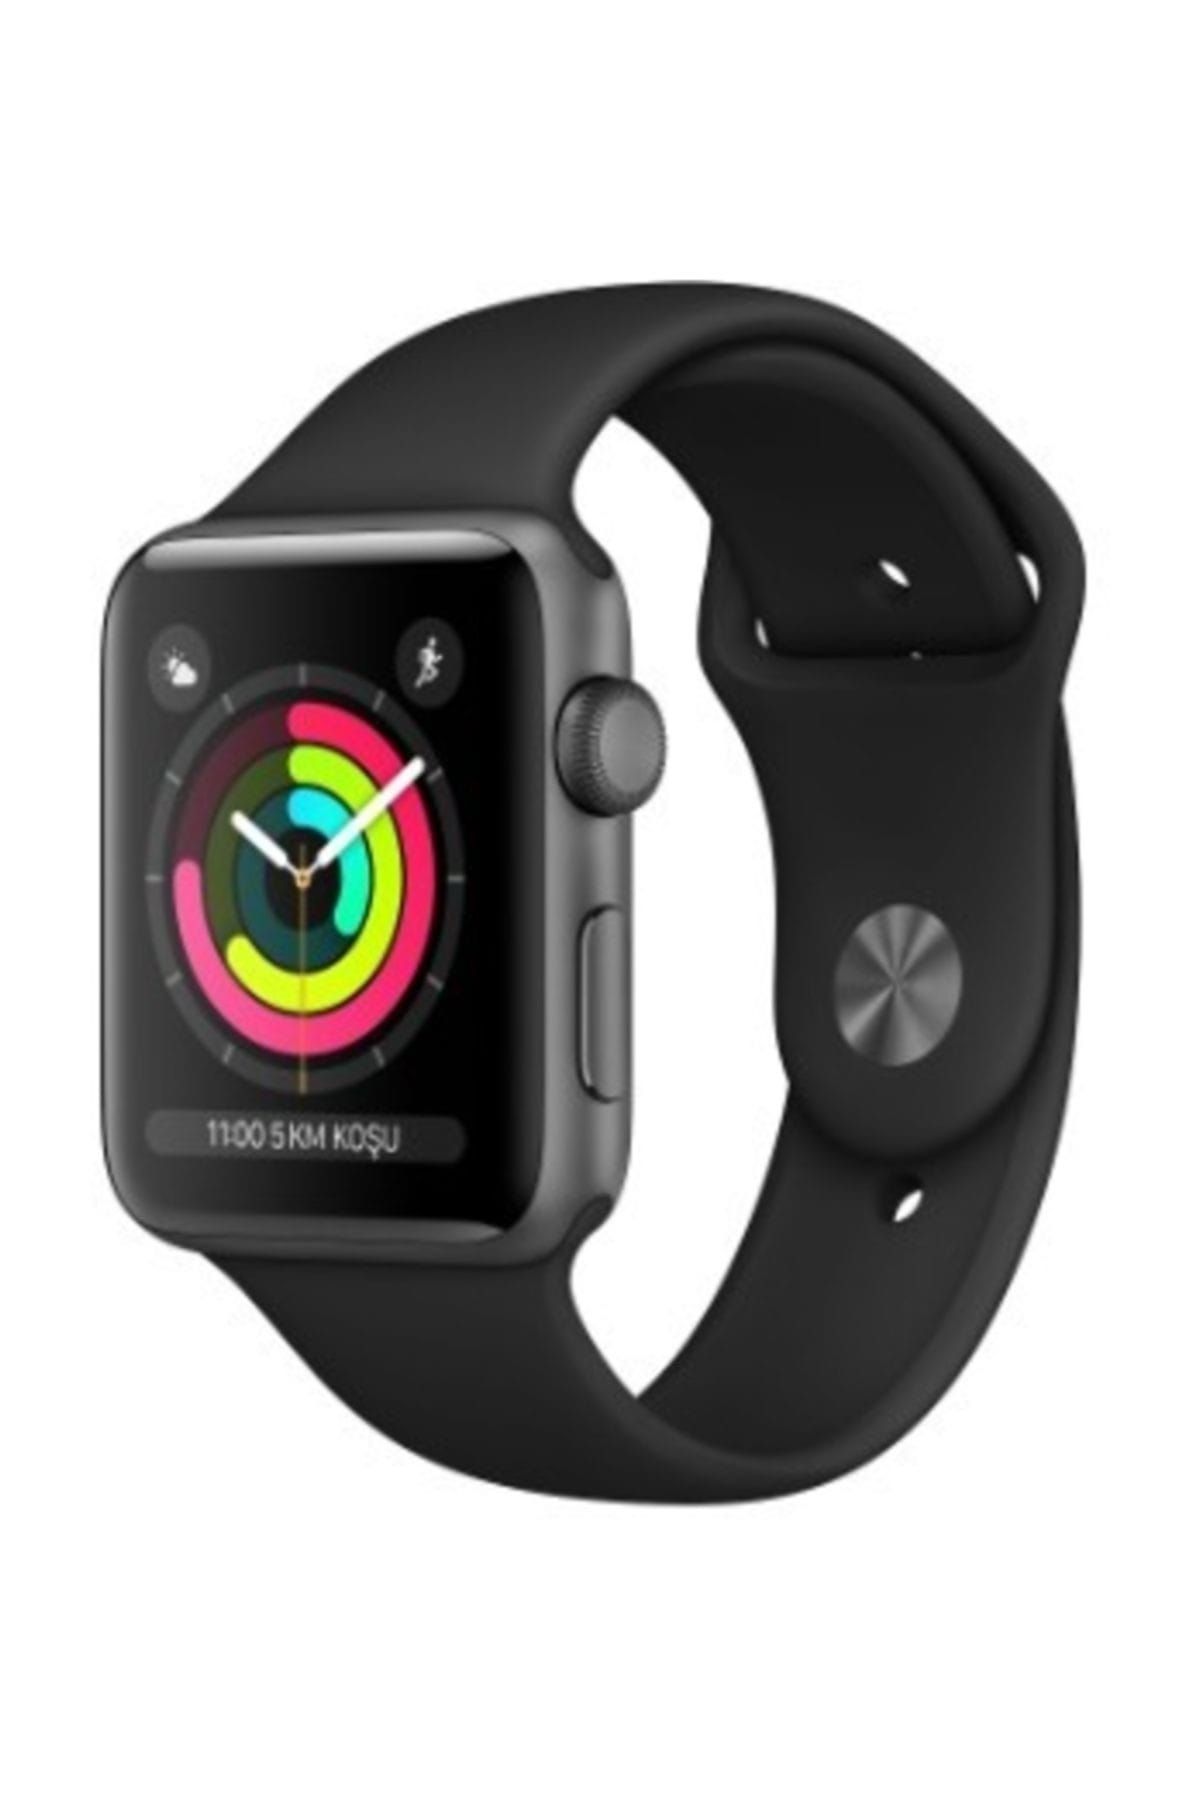 Apple Watch Series 3 38mm GPS Uzay Grisi Alüminyum Kasa ve Siyah Spor Kordon (Apple Türkiye Garantili)